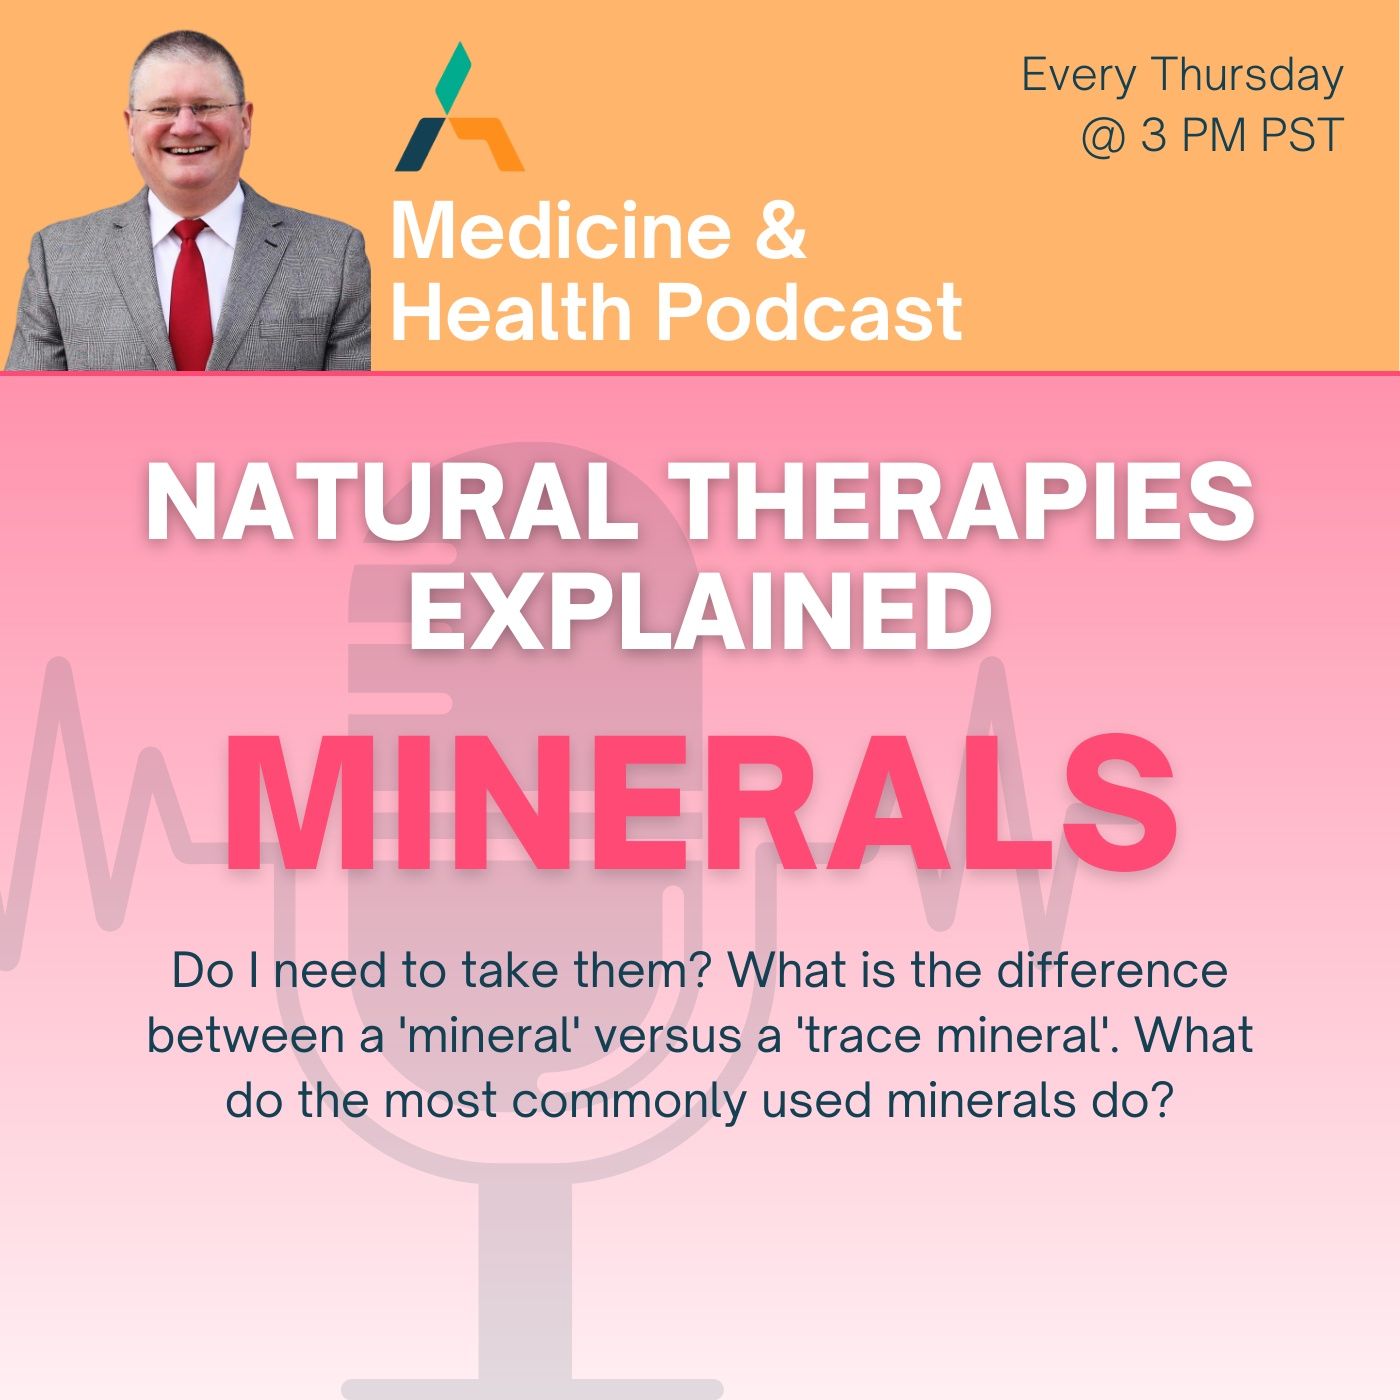 MINERALS (Helpful Therapies)